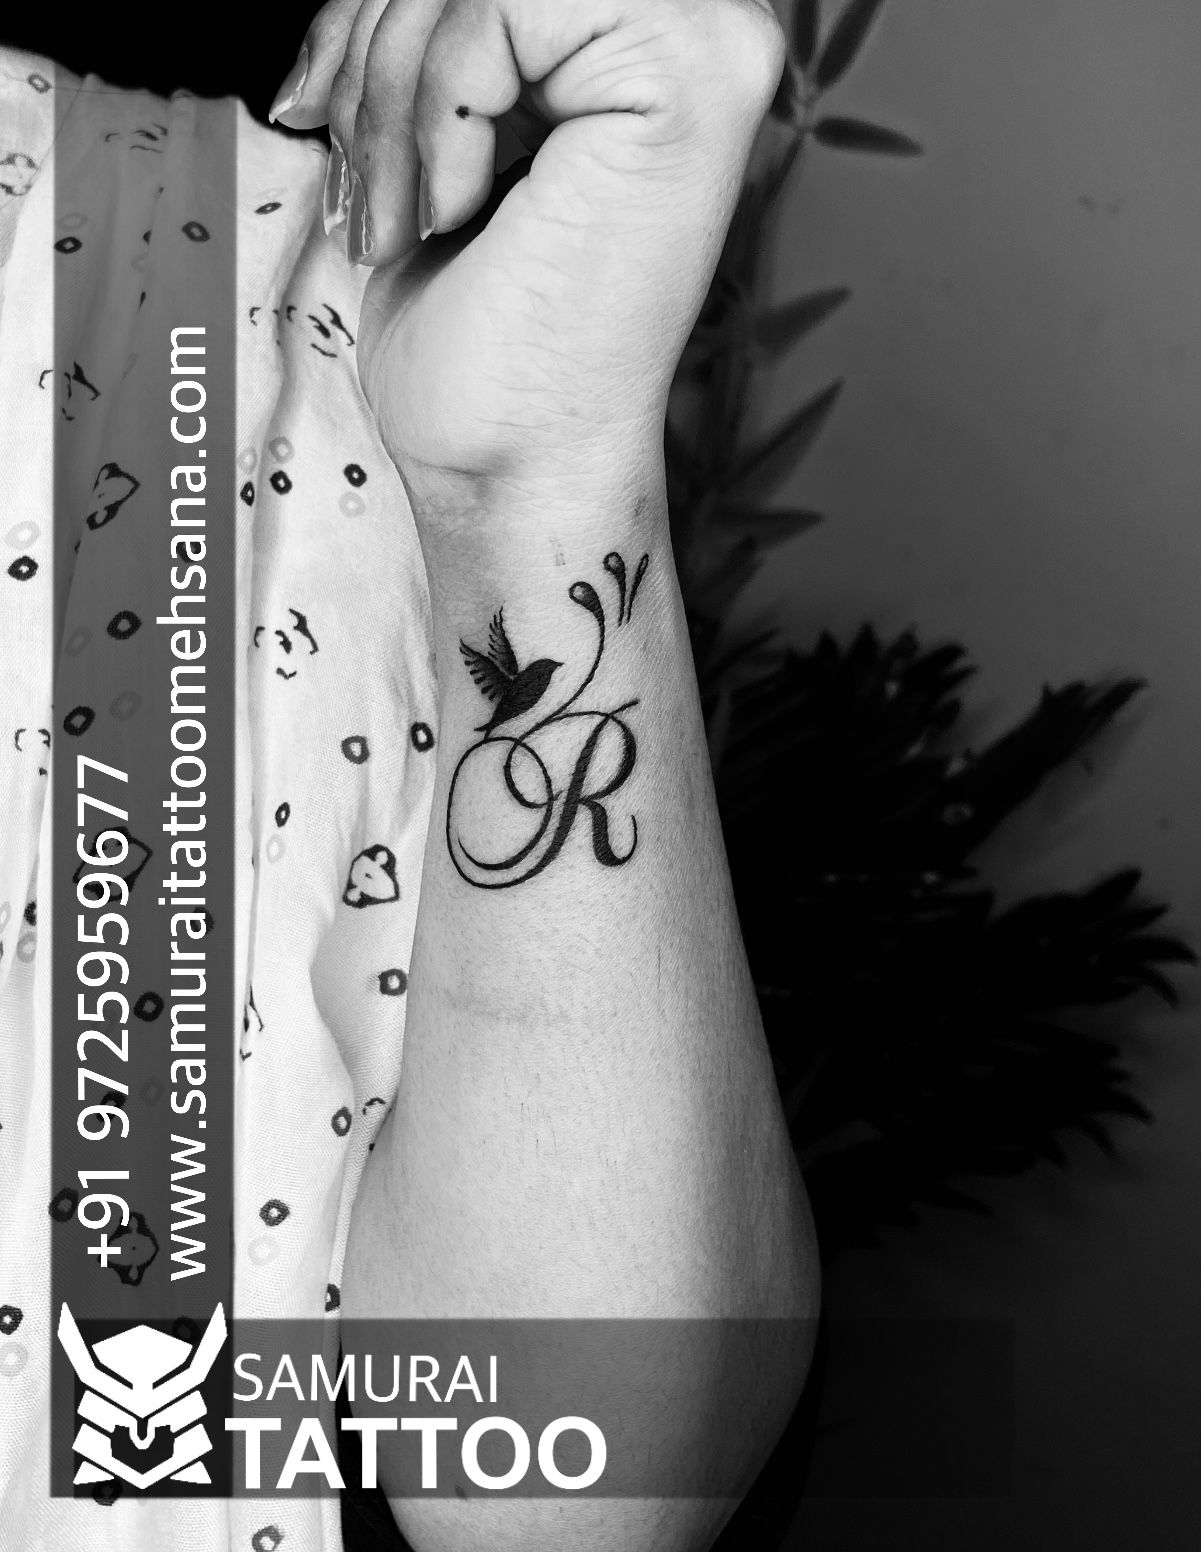 Tattoo uploaded by Vipul Chaudhary • R logo tattoo || R tattoo ...